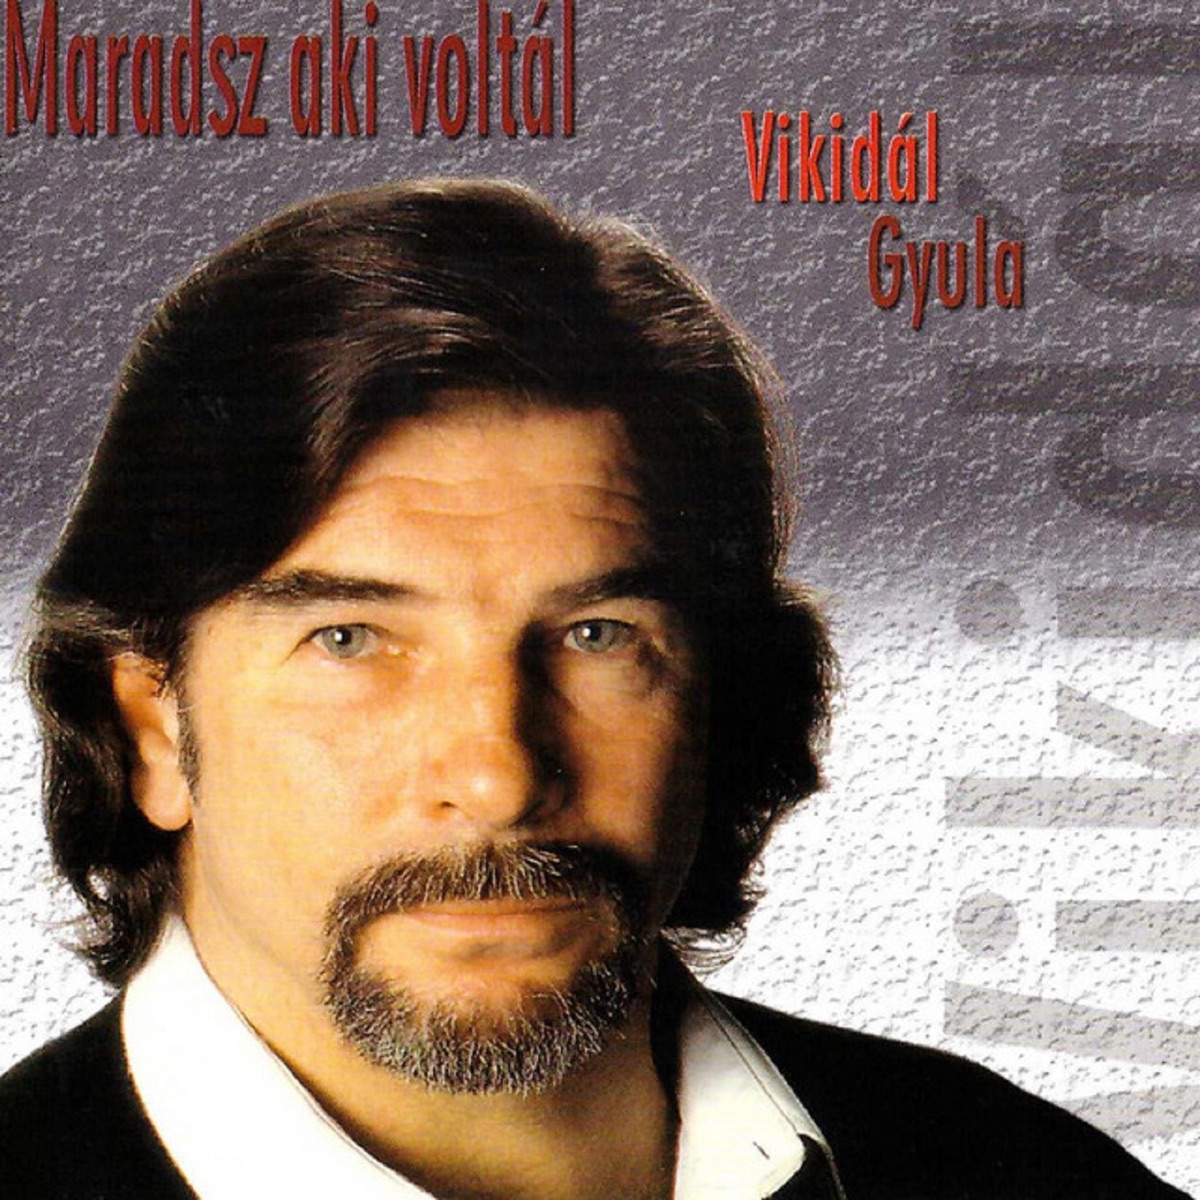 Vikidál Gyula de Gyula Vikidál en Apple Music